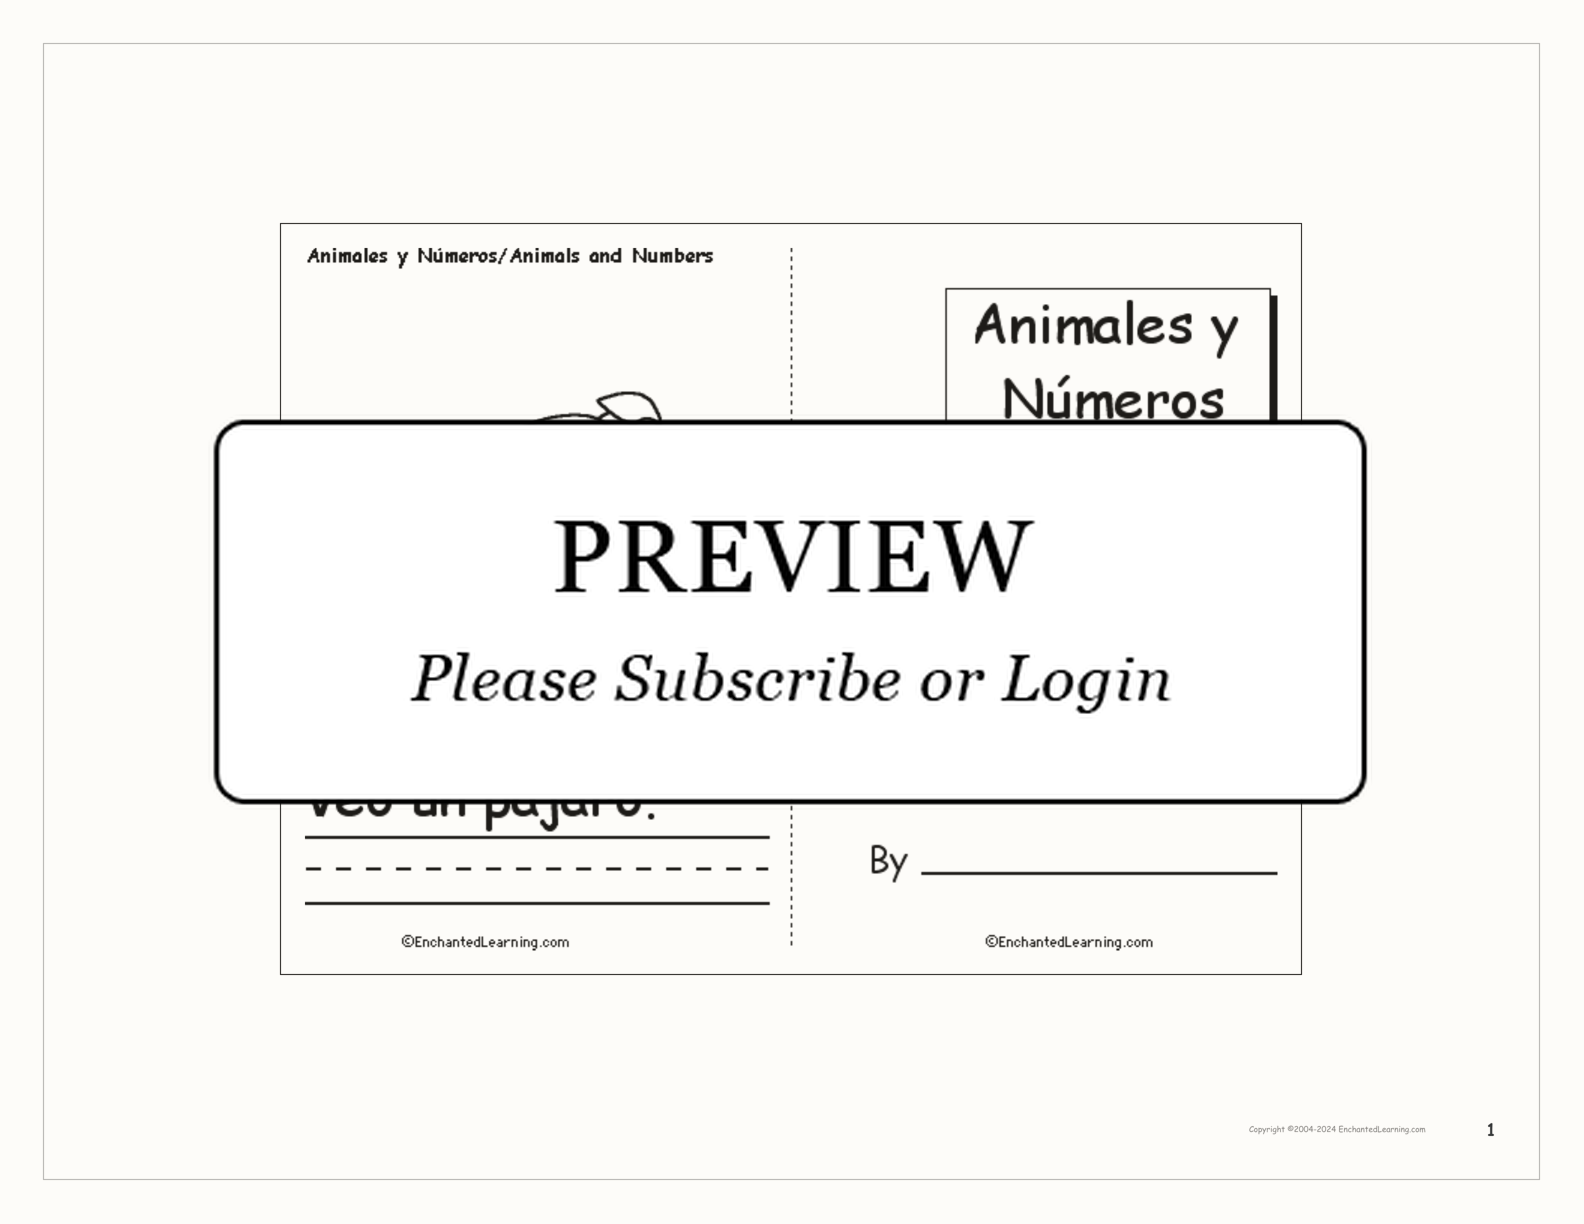 Animales y Números: A Printable Bilingual Book interactive printout page 1